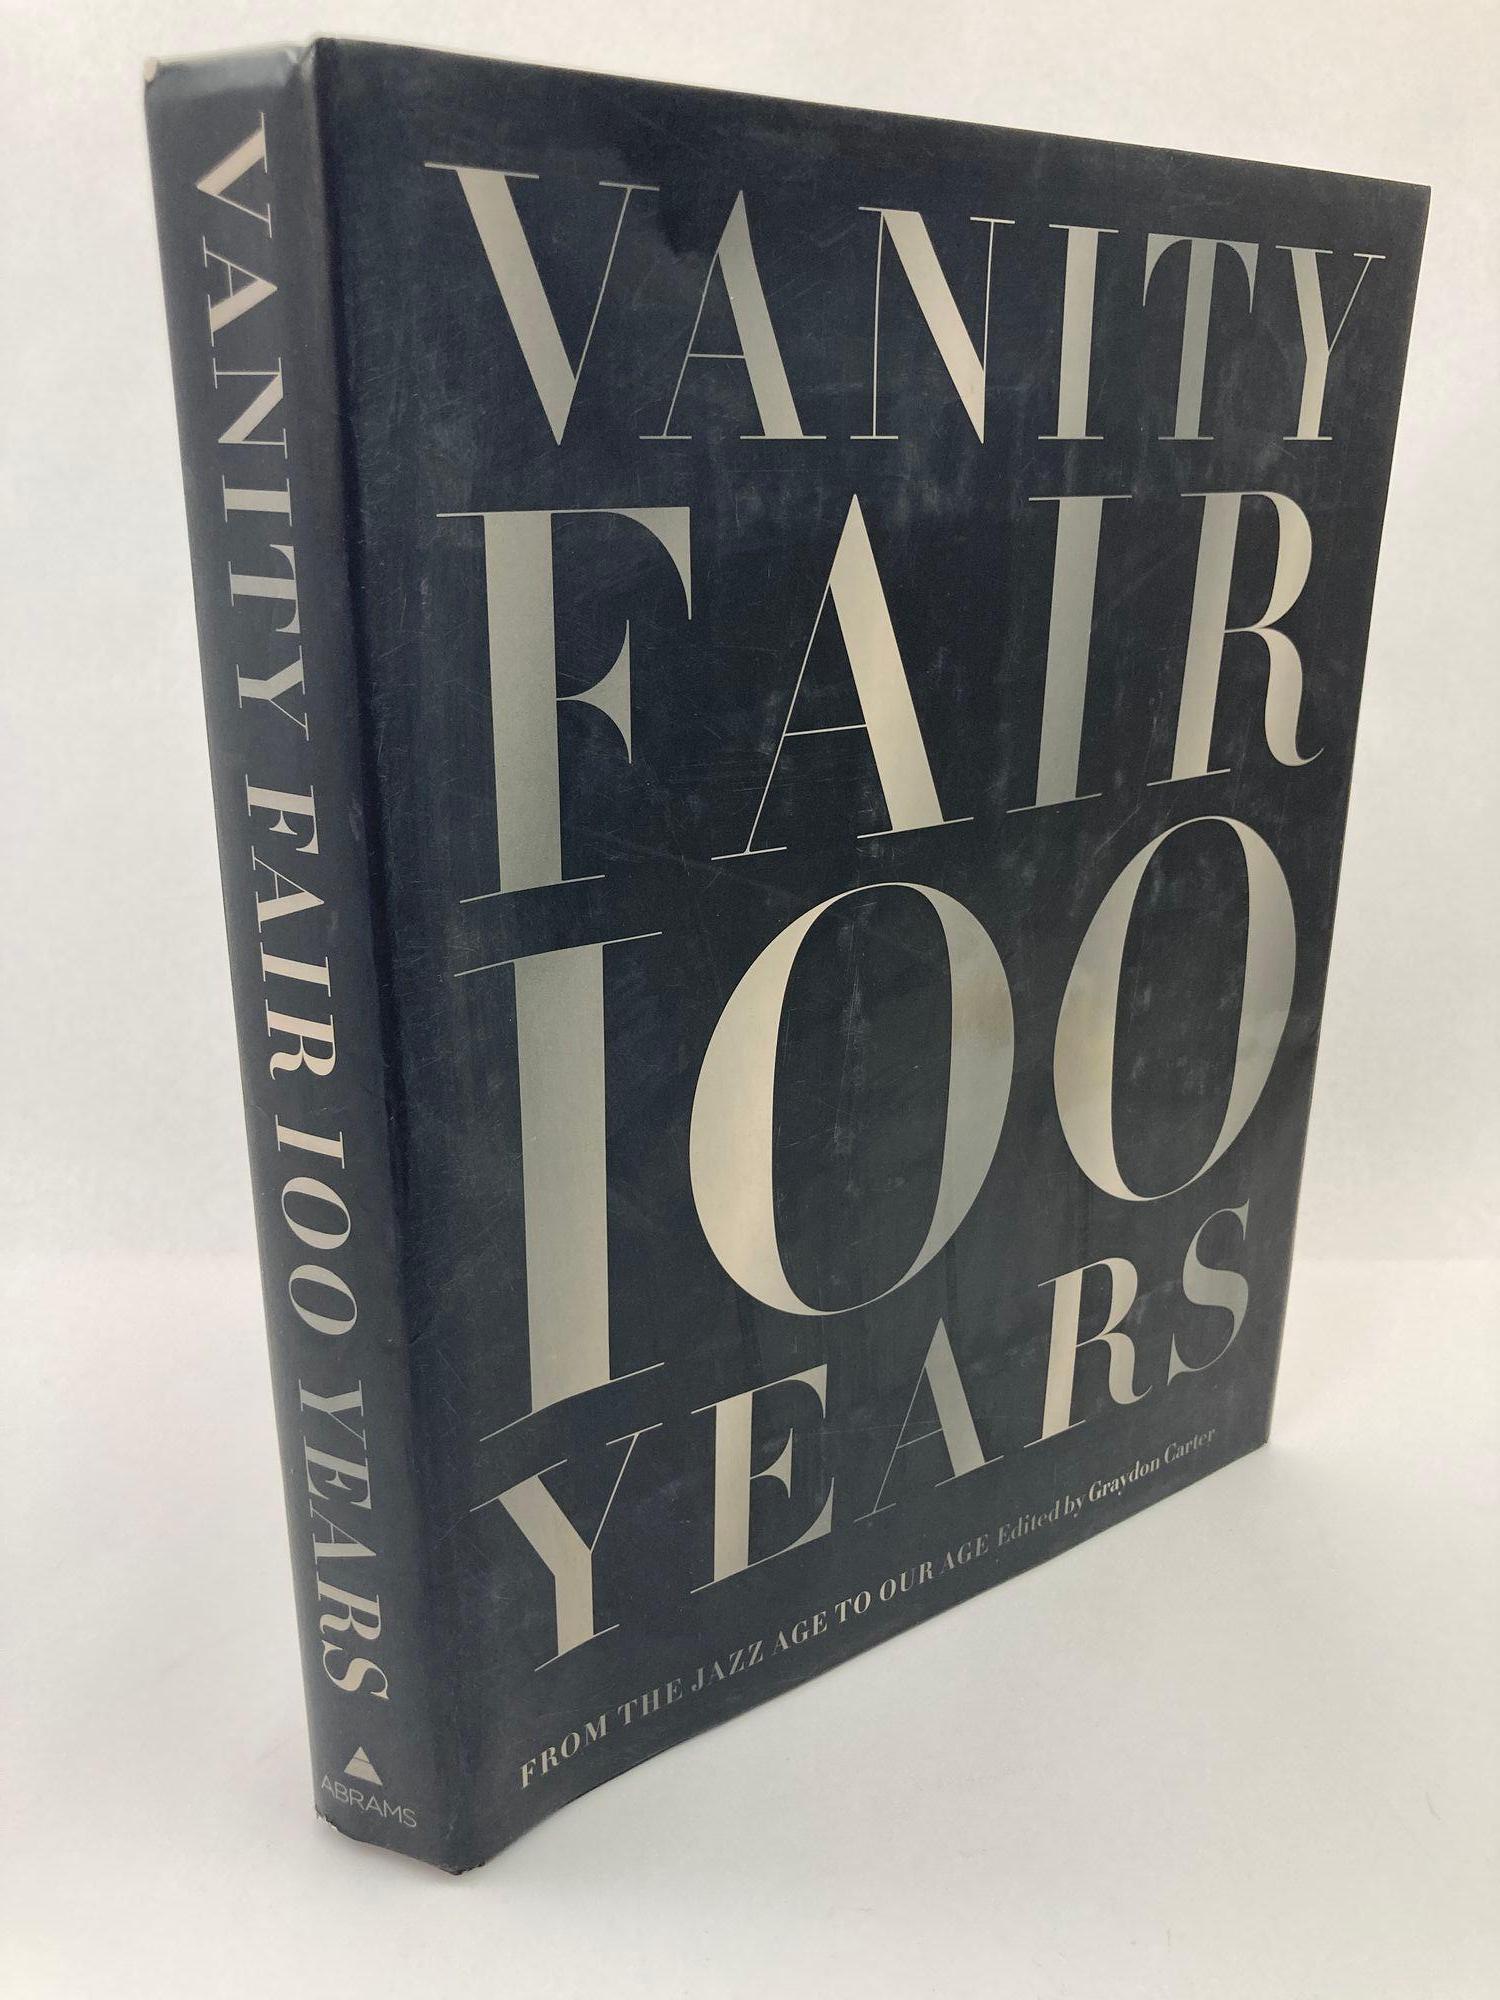 Vanity Fair: 100 Years, From the Jazz Age to Our Age, Graydon Carter, 2013.
Vanity Fair 100 Years zeigt ein Jahrhundert voller Persönlichkeiten und Macht, Kunst und Kommerz, Krisen und Kultur, sowohl auf hohem als auch auf niedrigem Niveau.
In